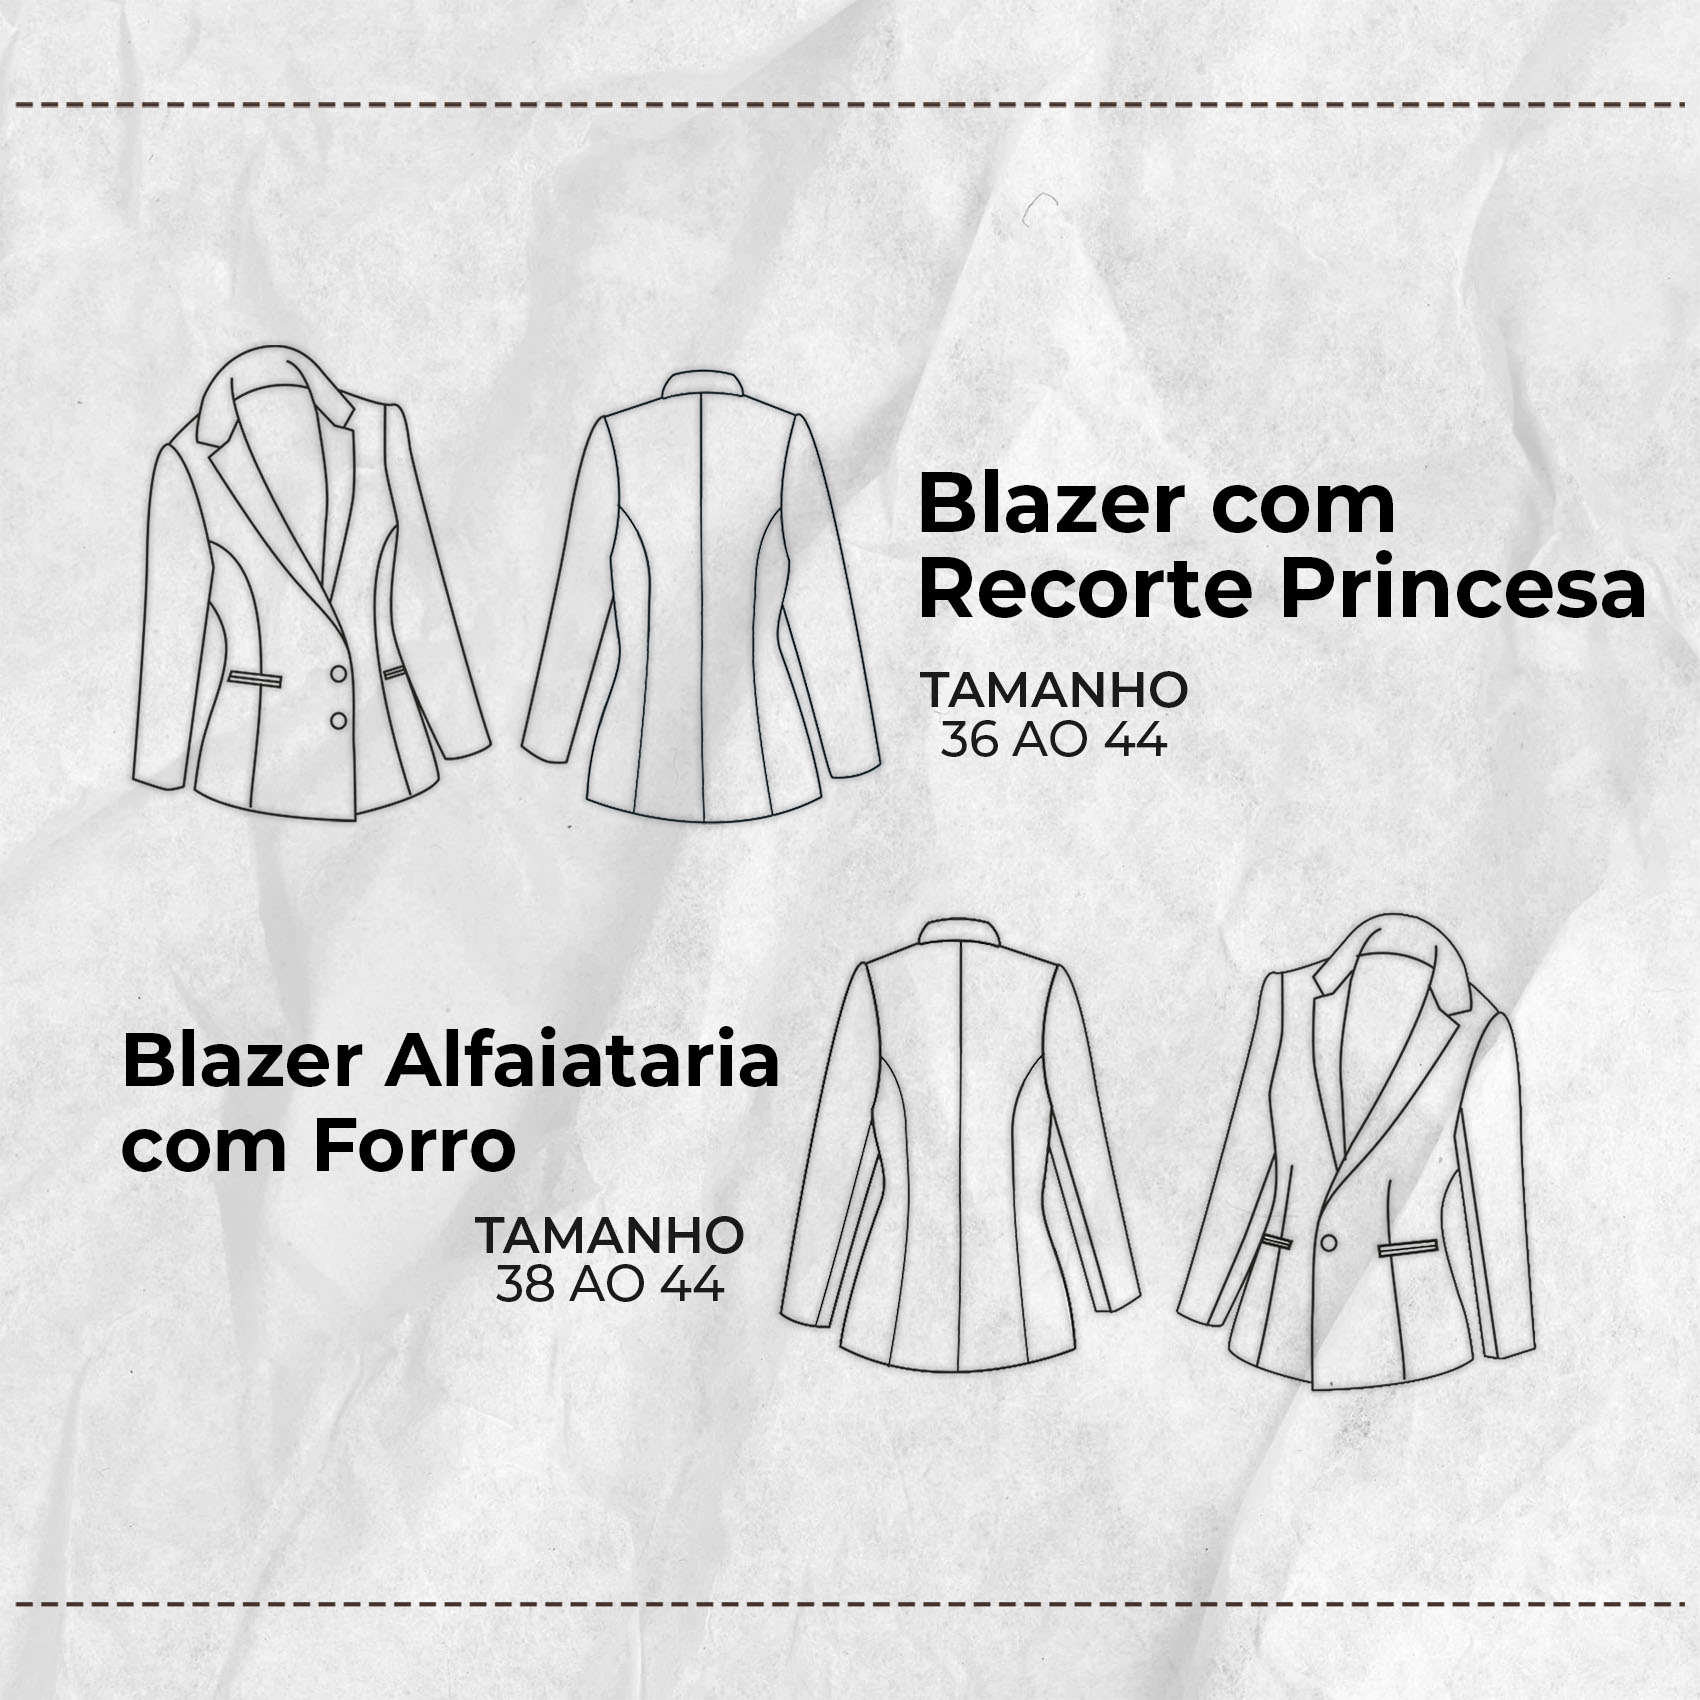 Blazer-com-recorte-princesa-4